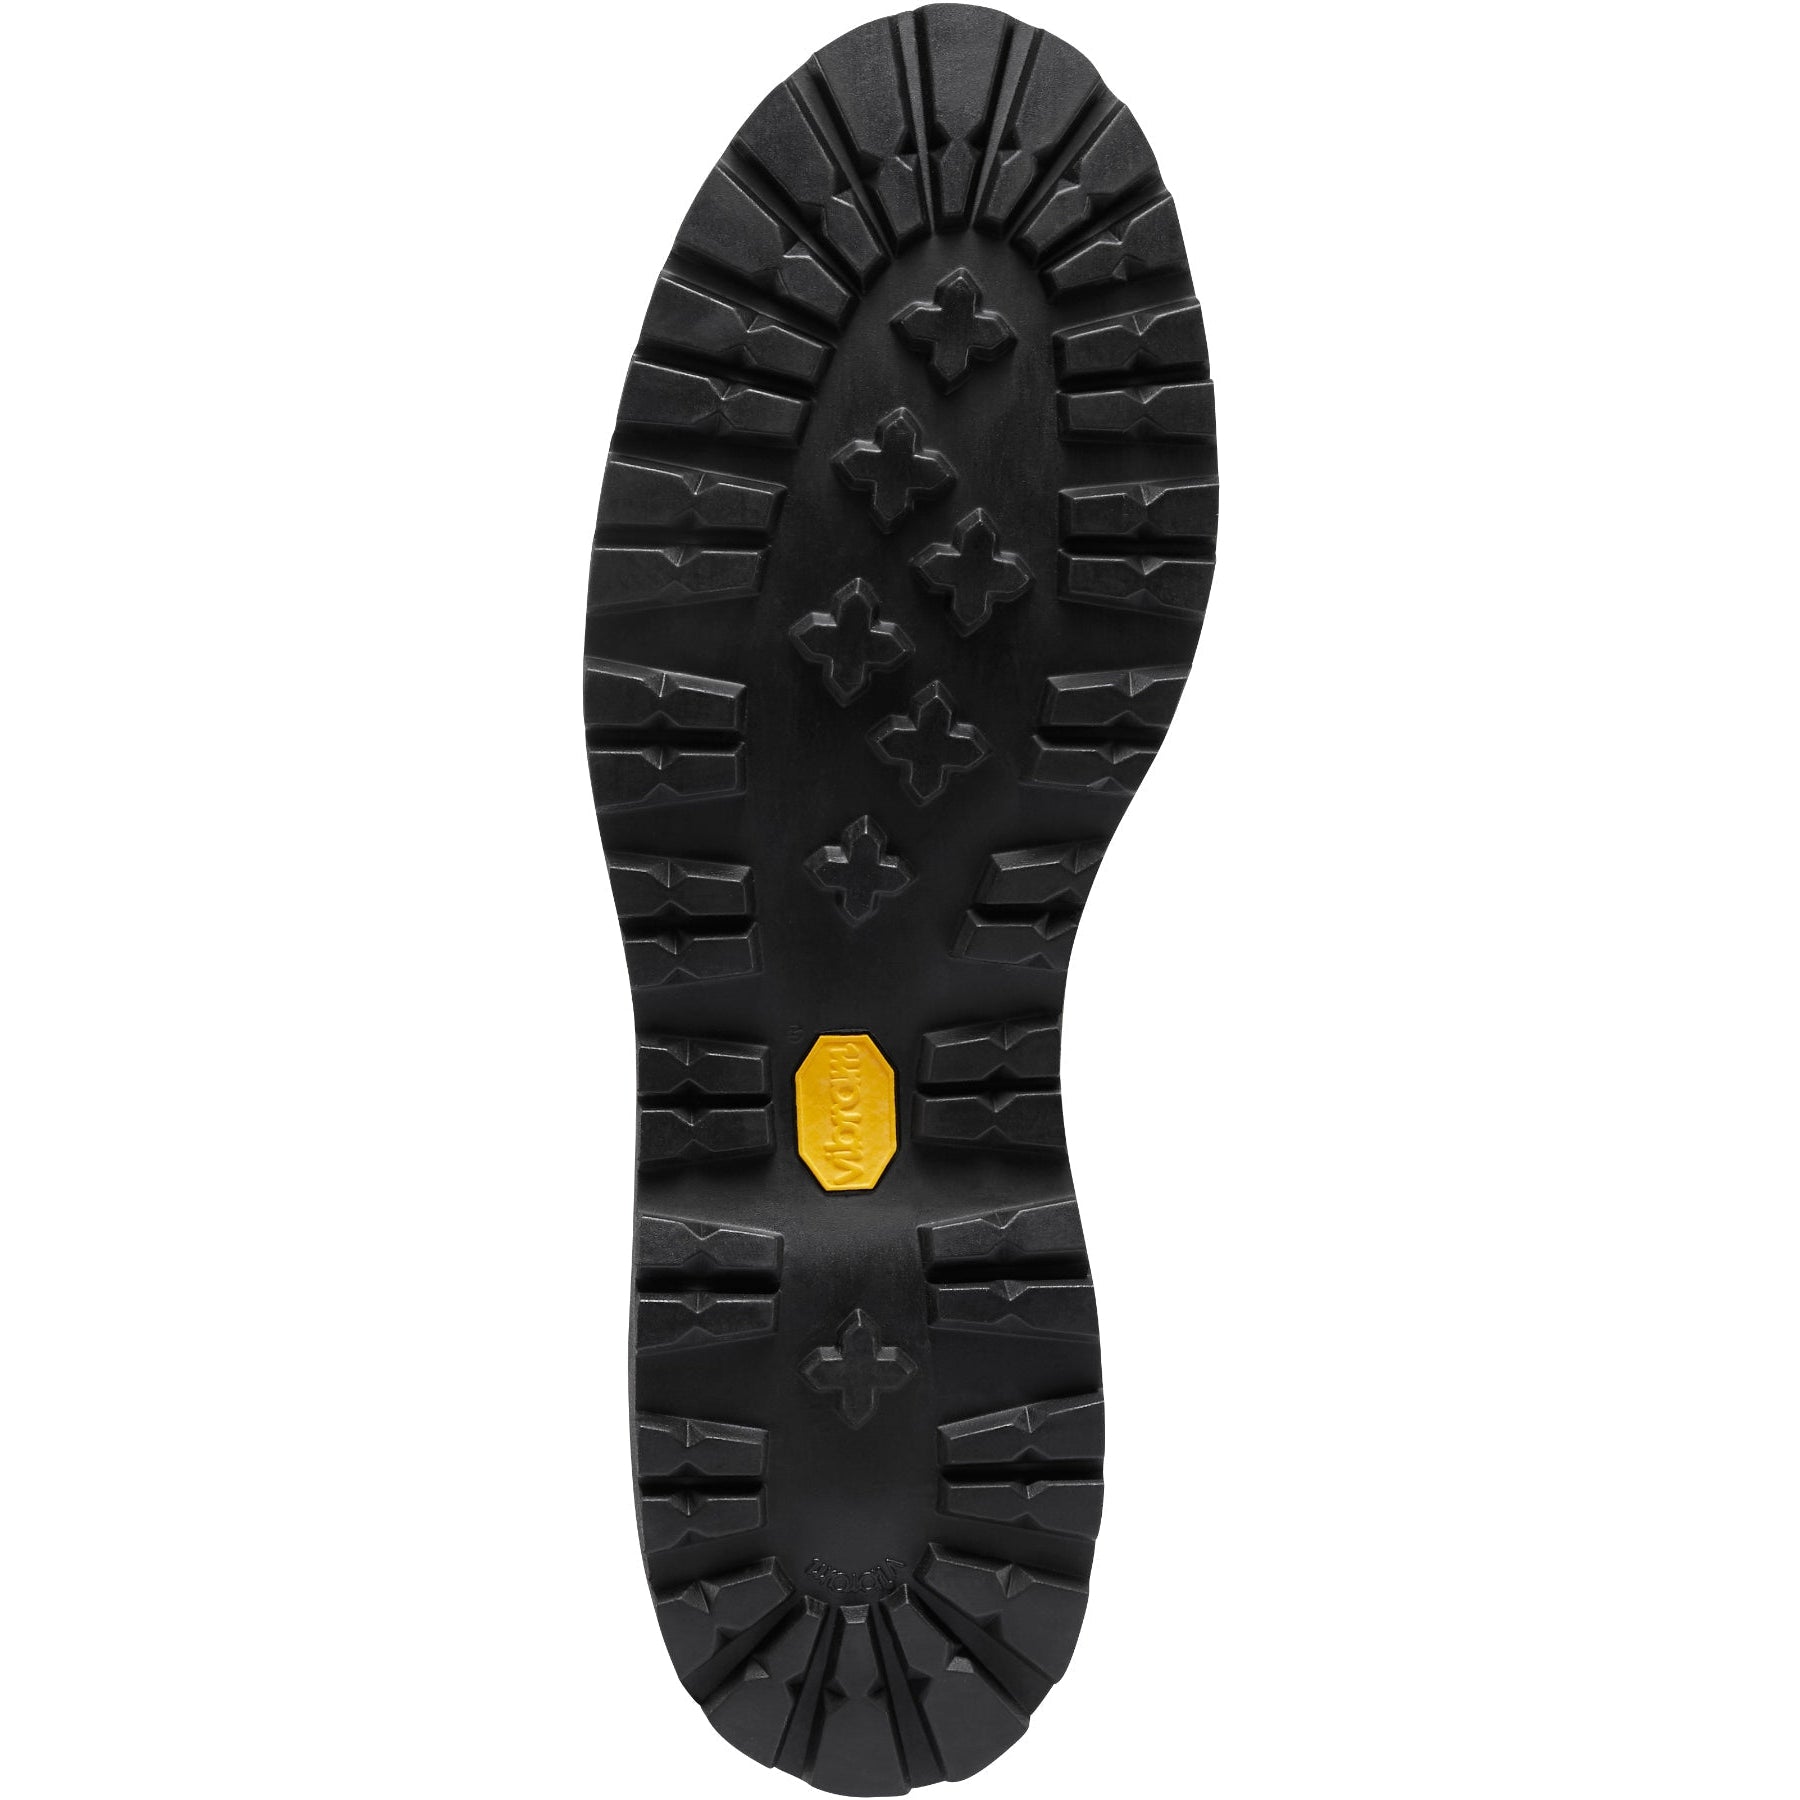 Danner Men's Light II 6" WP USA Made Hiking Boot - Dark Brown - 33020  - Overlook Boots